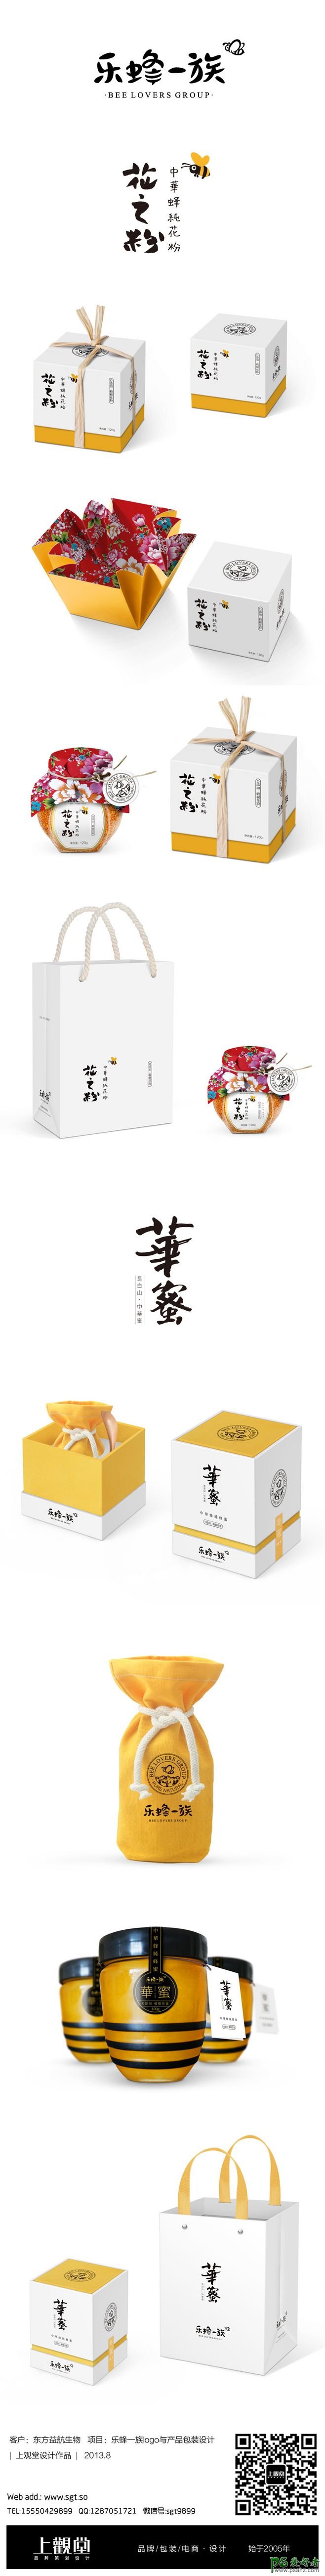 PS包装设计作品欣赏，简洁大气的蜂蜜产品包装盒设计作品。